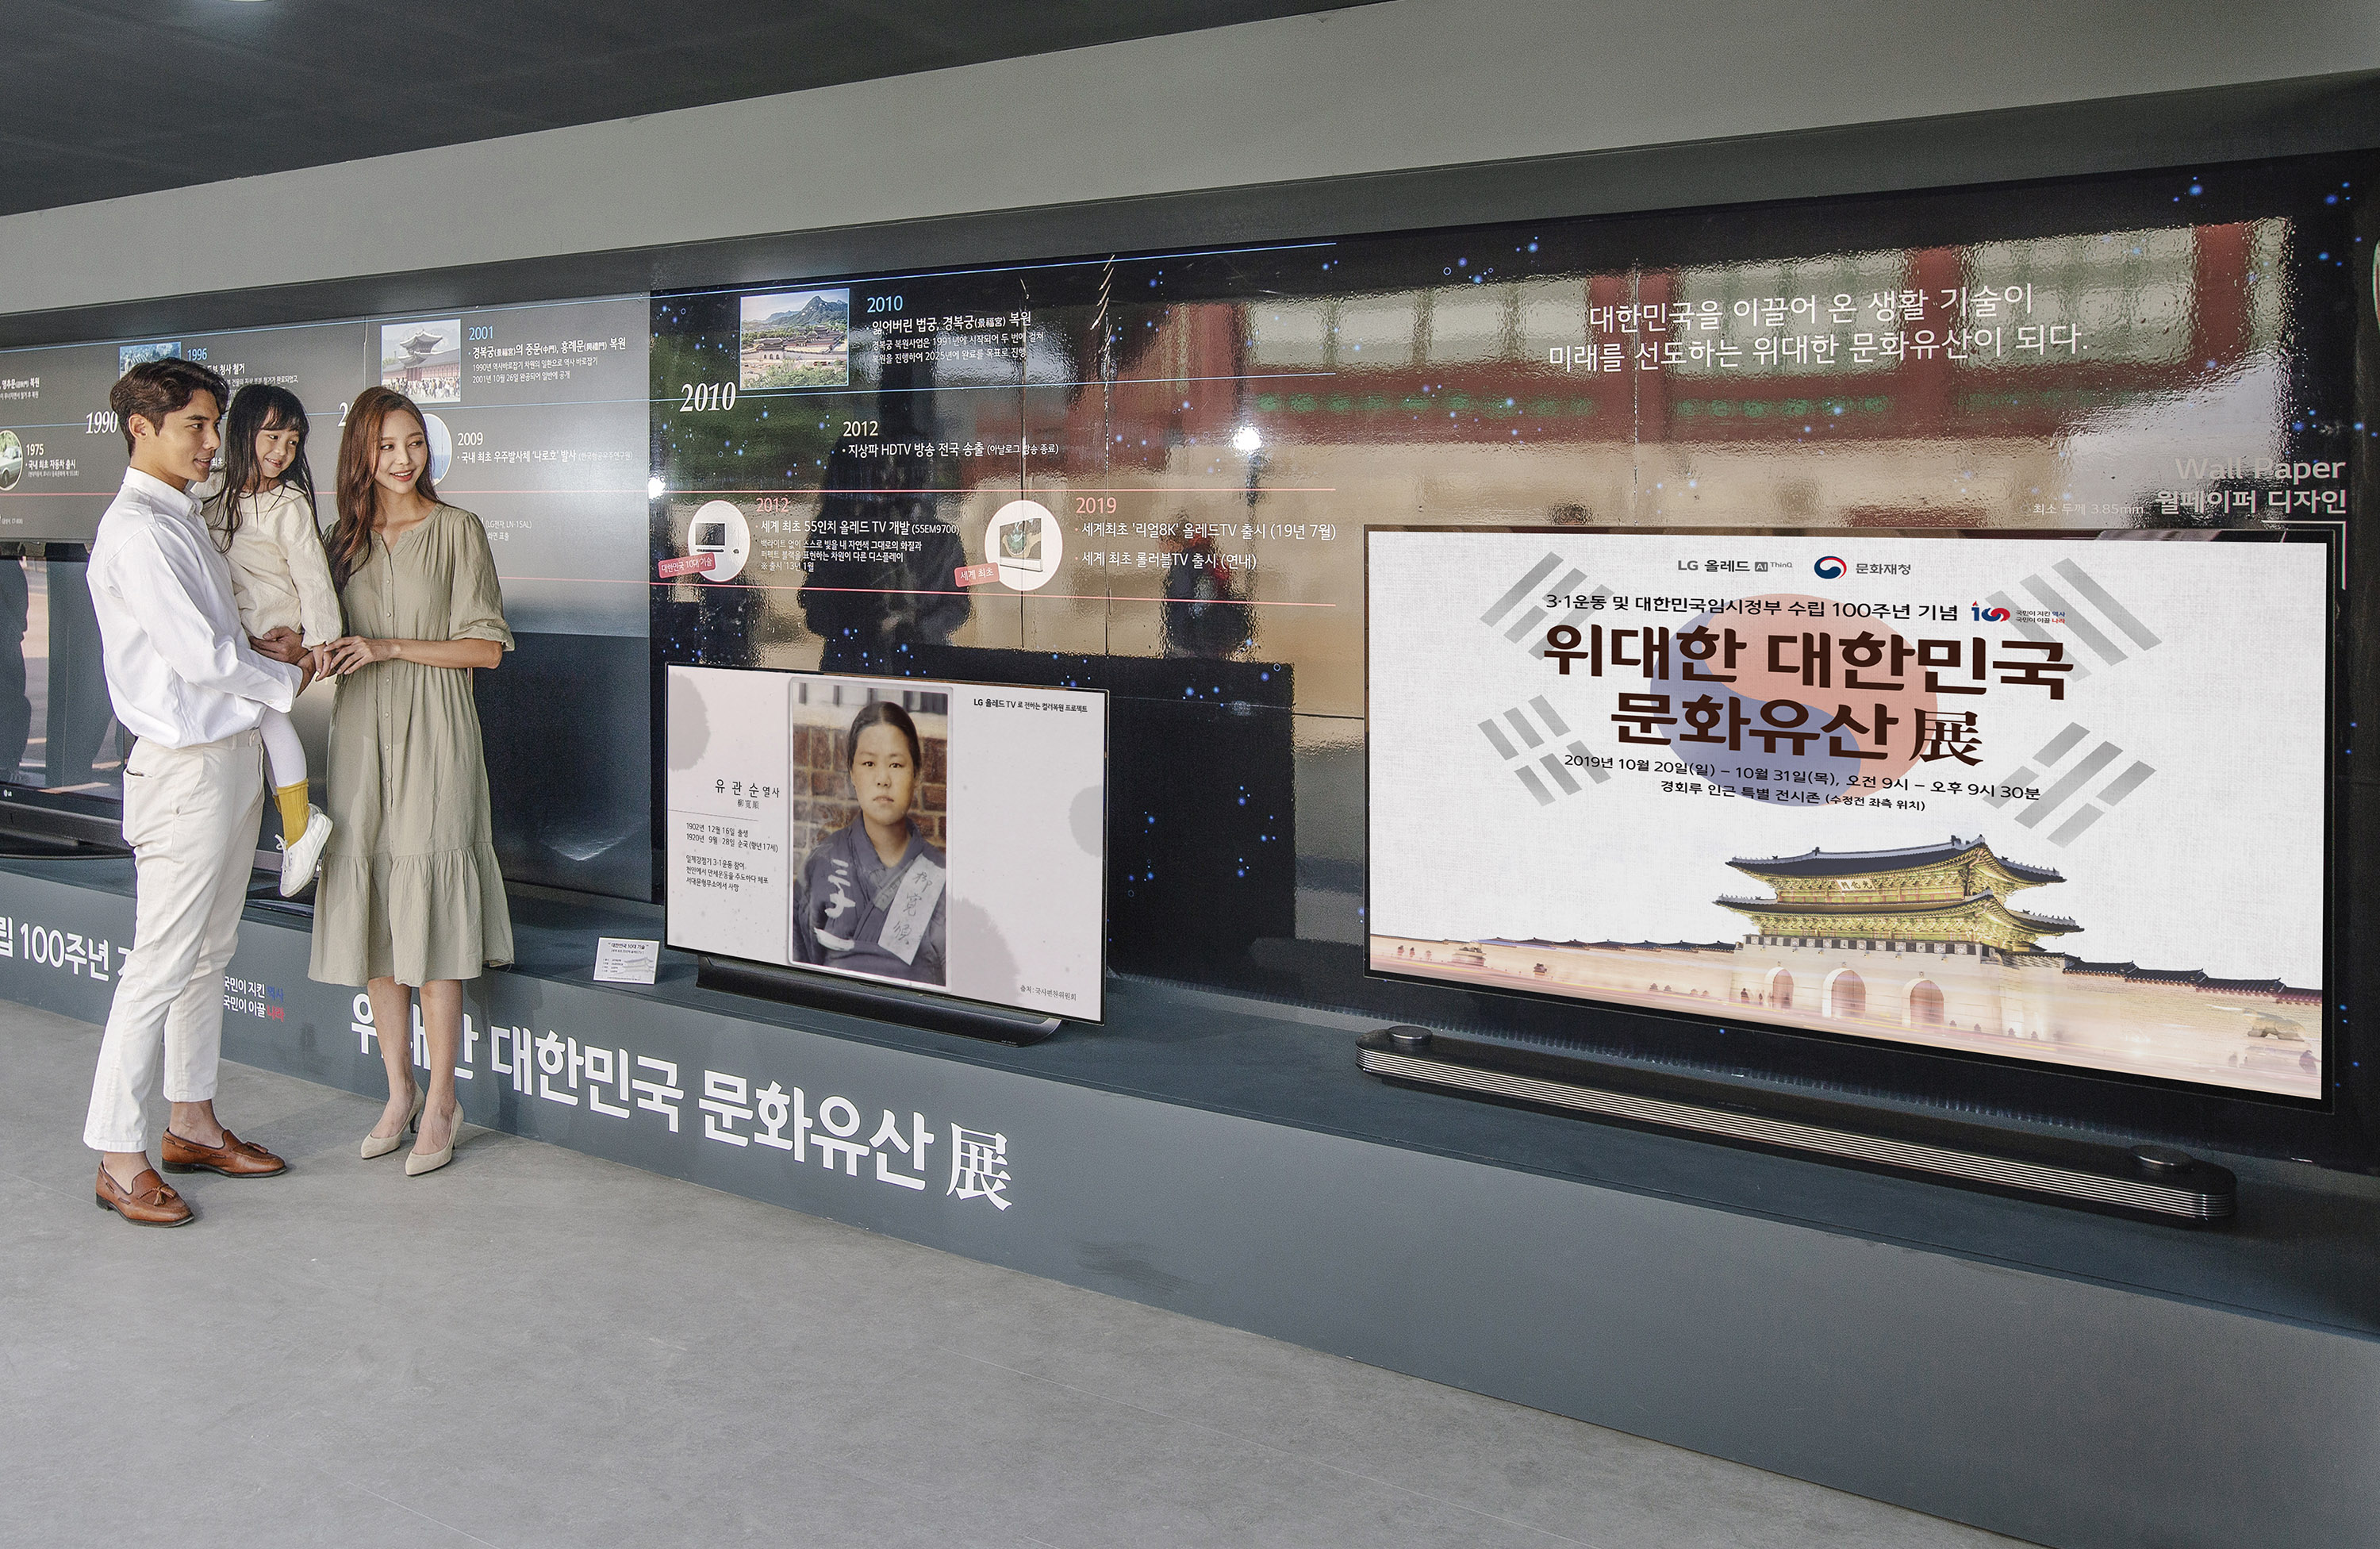 LG전자가 문화재청과 함께 경복궁에 '위대한 대한민국 문화유산 展'을 마련해 대한민국 궁궐 역사와 다양한 문화유산을 선보였다. 모델들이 'LG 올레드 TV'로 선보이는 독립운동 영웅들 모습을 관람하고 있다.